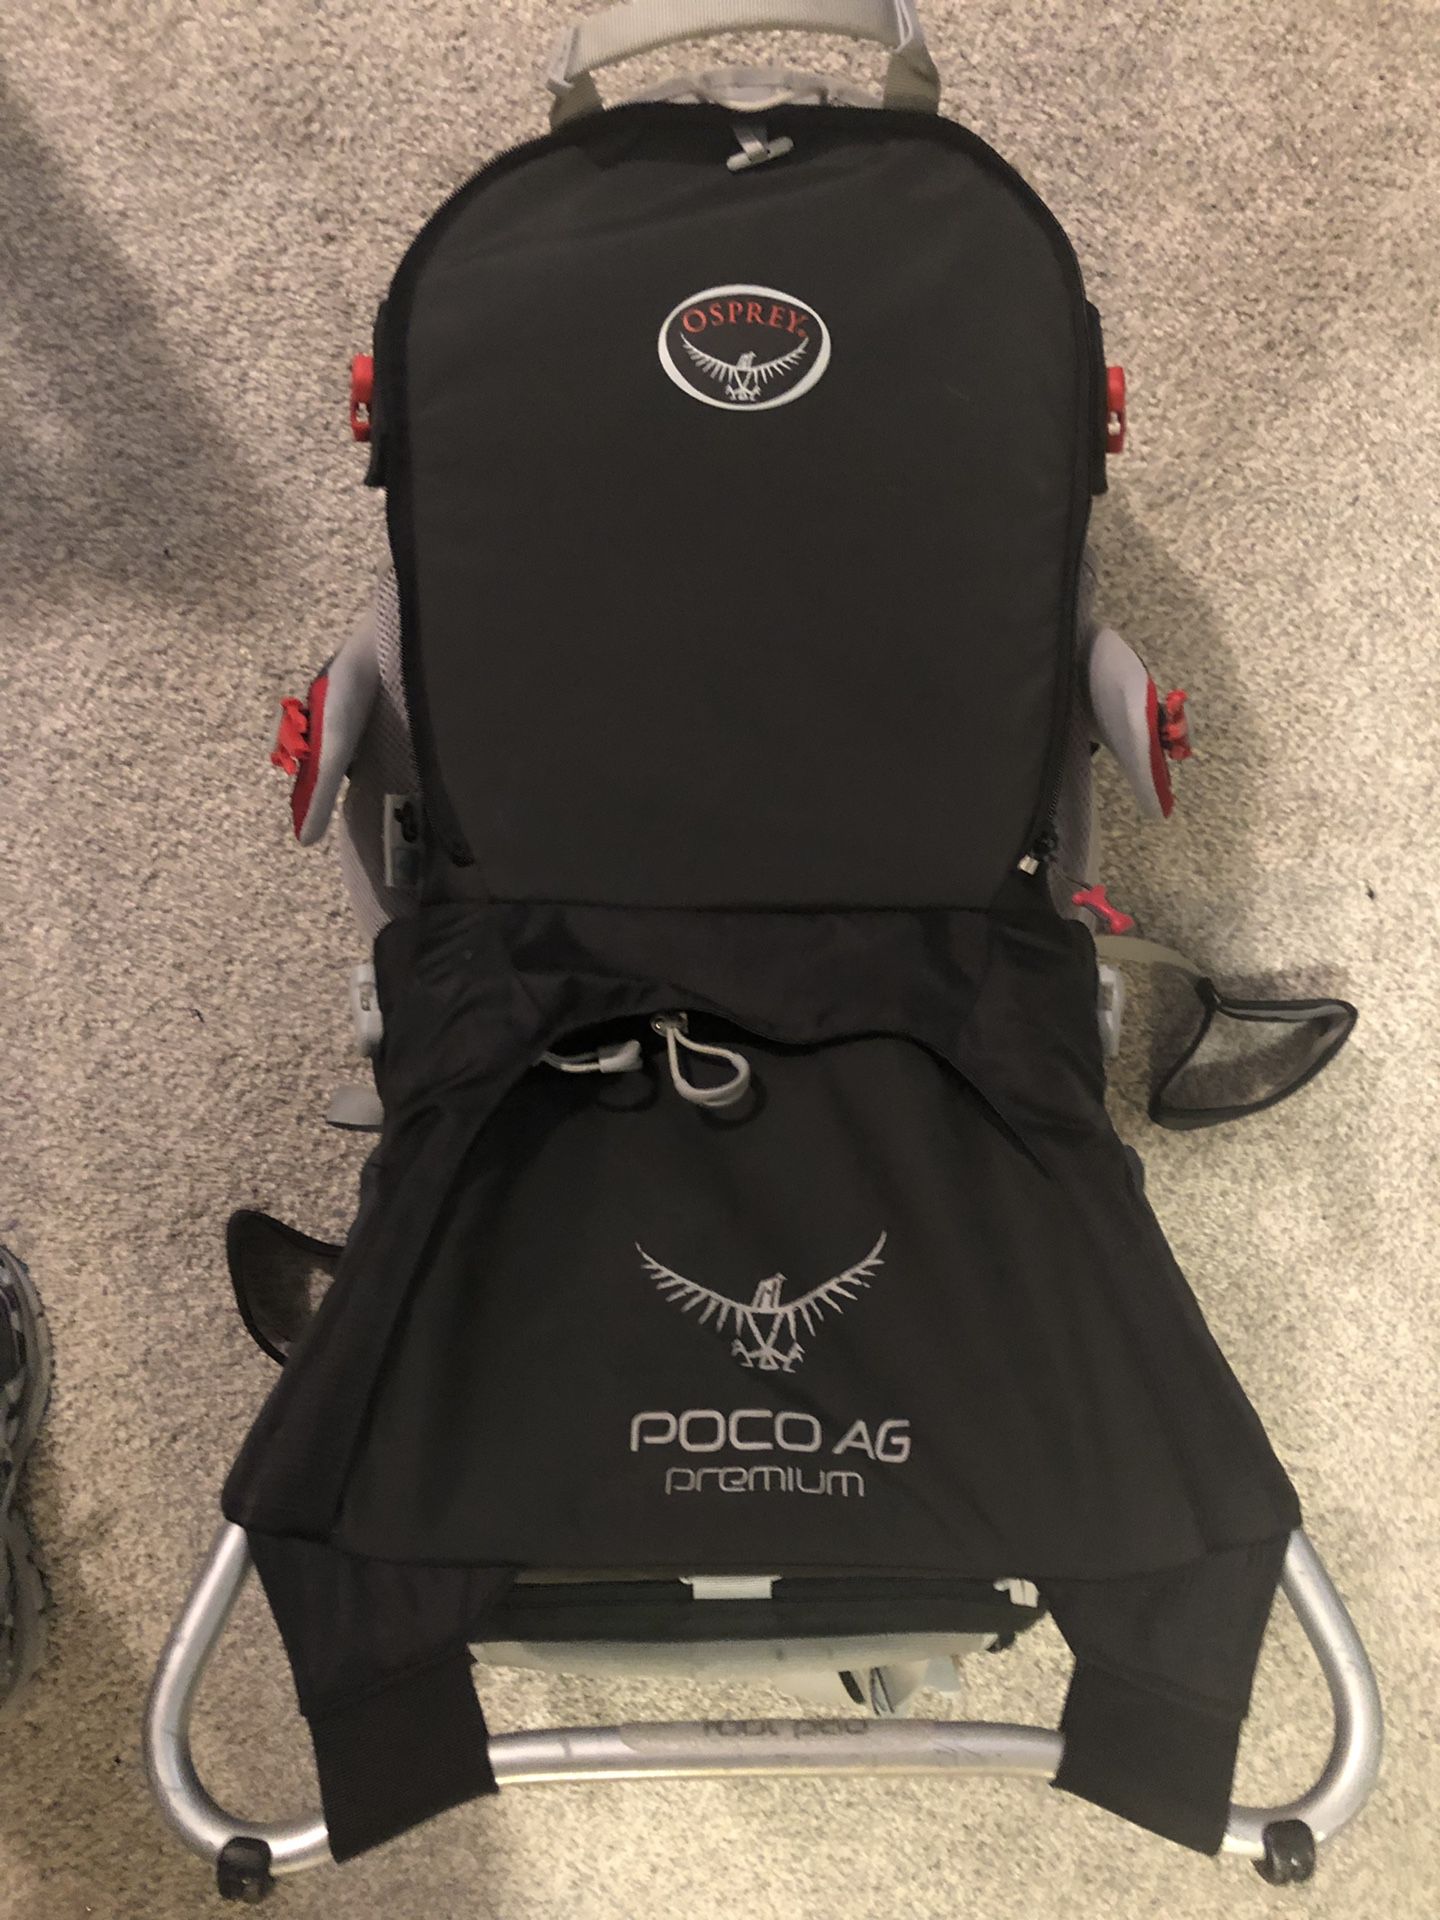 Osprey poco AG premium hiking child carrier backpack bag